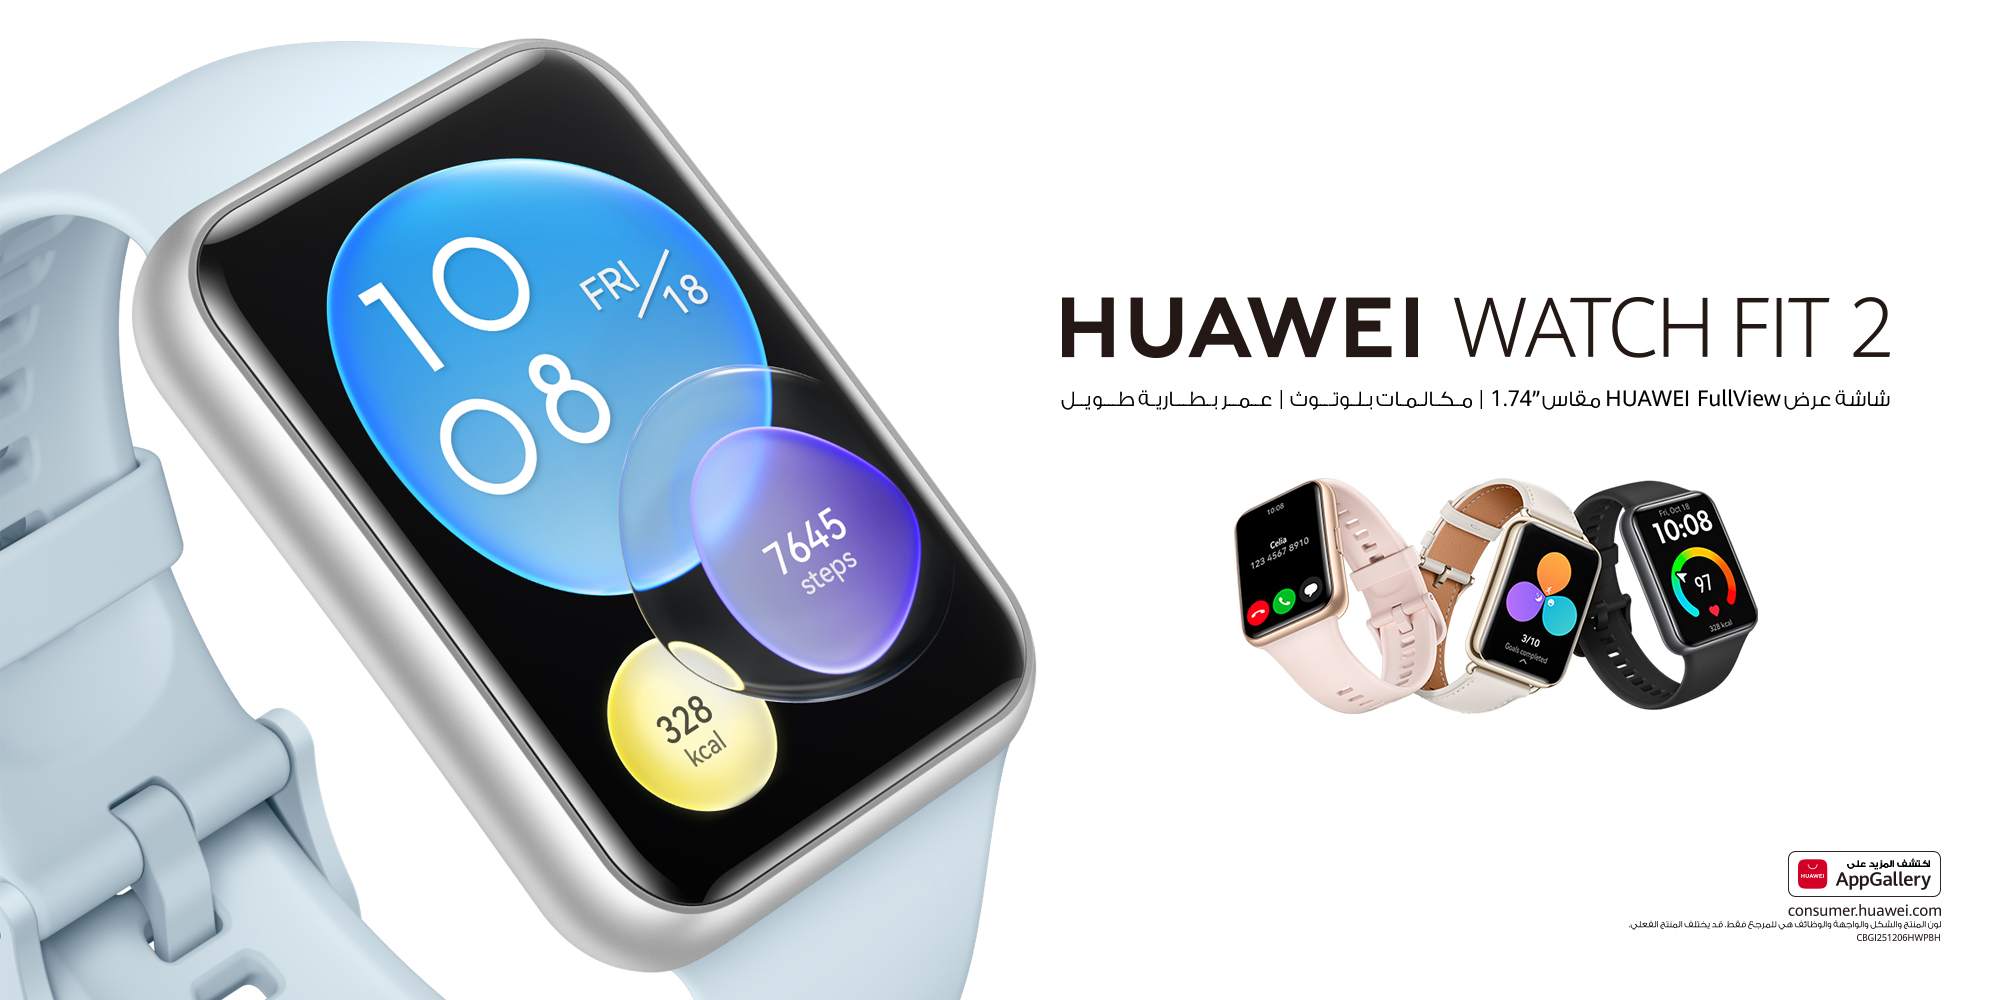 Huawei watch fit инструкция. Хуавей фит 2. Хуавей вотч фит 2. Huawei fit2 Sakura упаковка. Хуавей вотч фит 2 Актив эдишн.